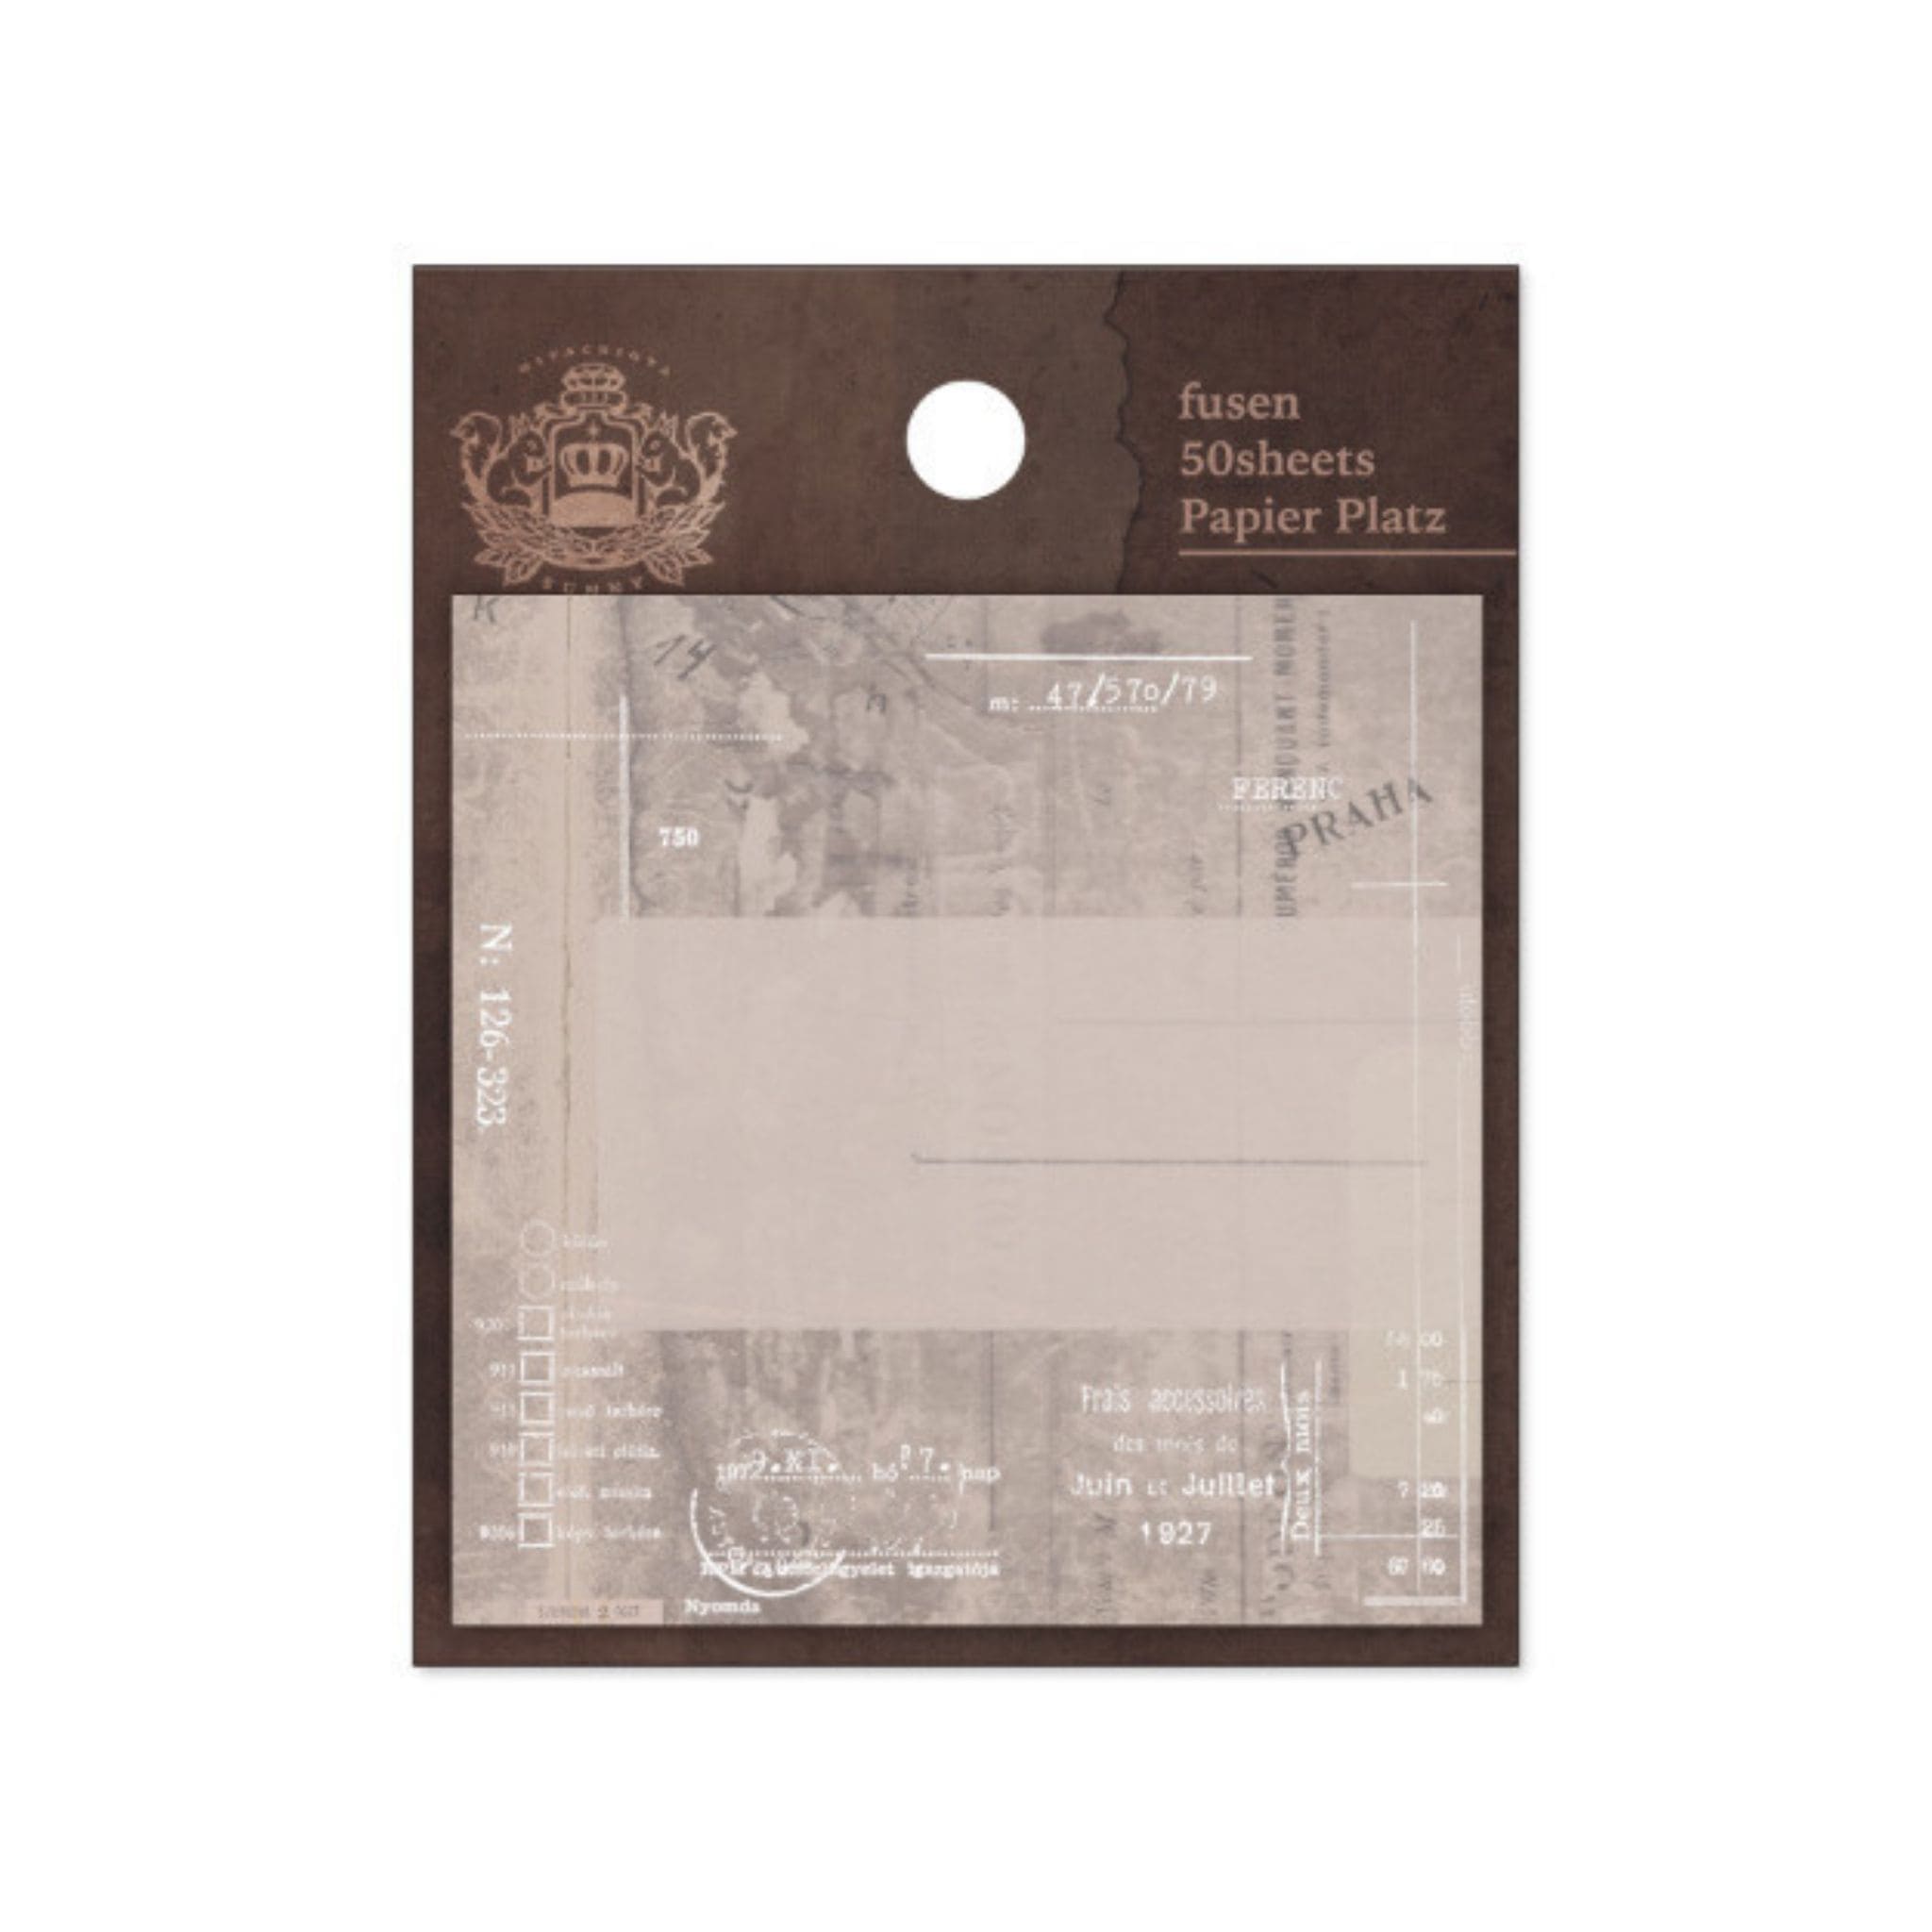 Papier Platz - Praha Vintage Sticky Notes - Paper Kooka